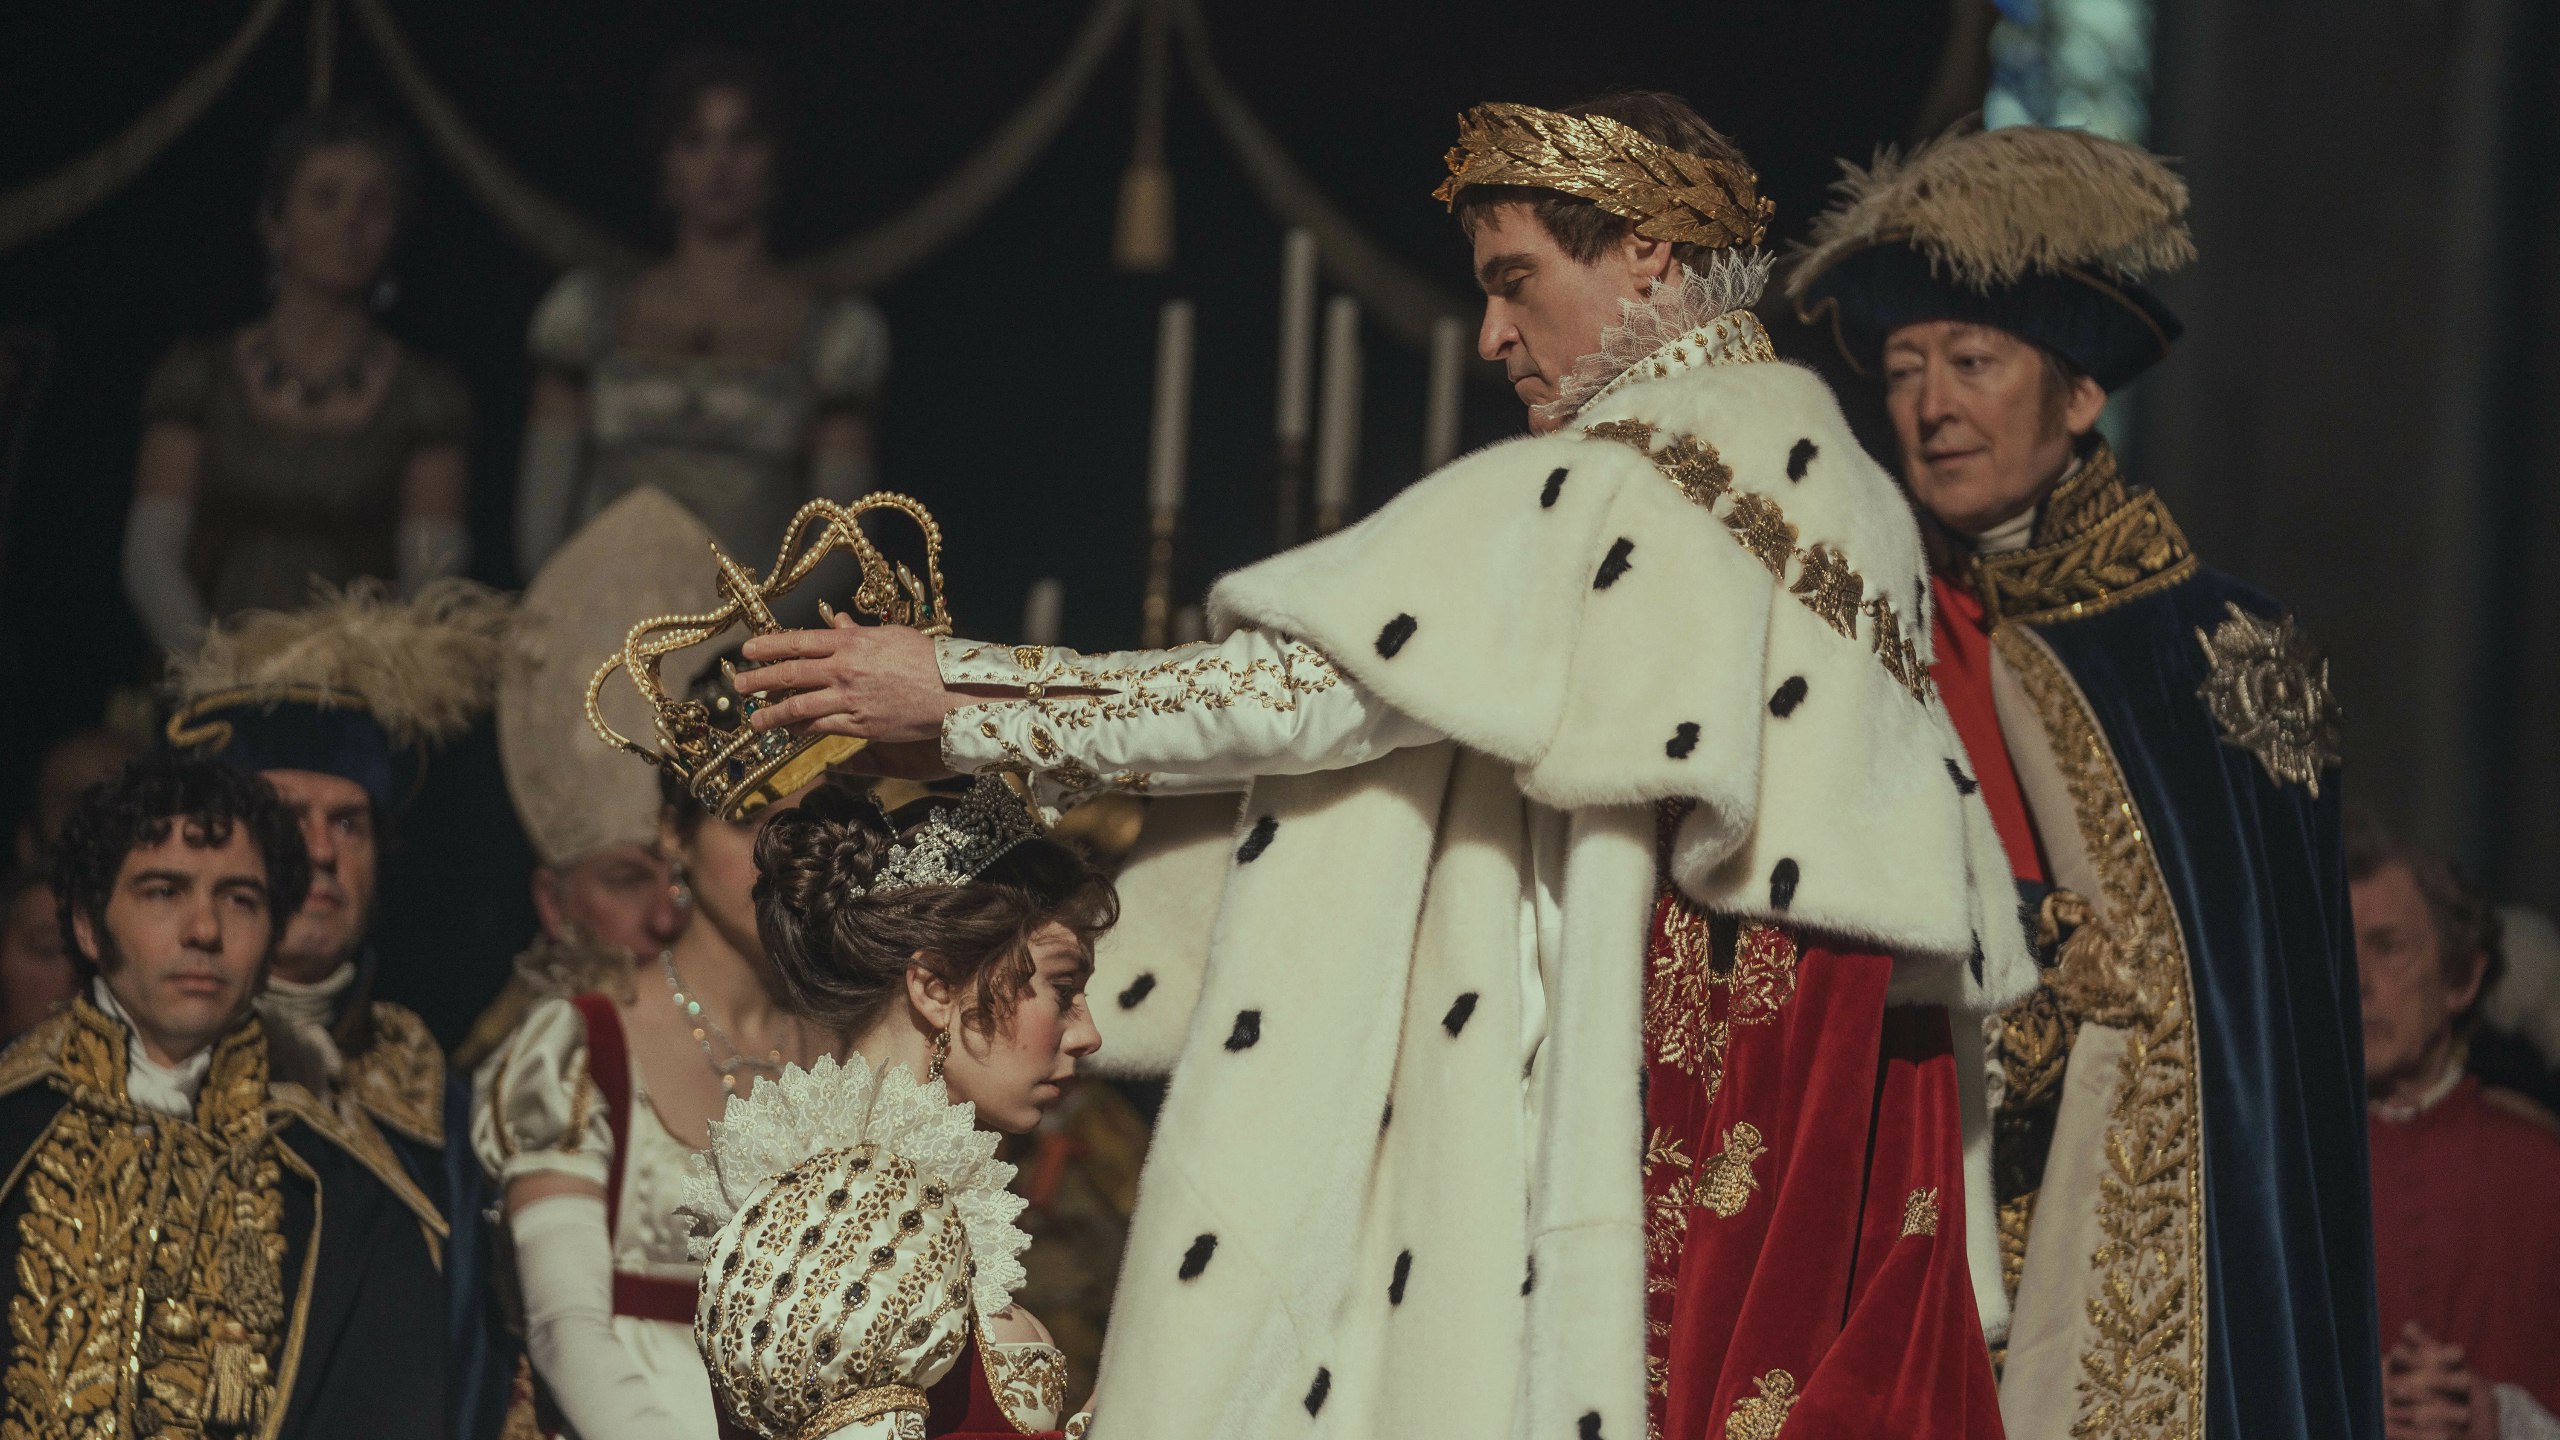 КиноКузбасс: в полном недоумении после фильма “Наполеон”